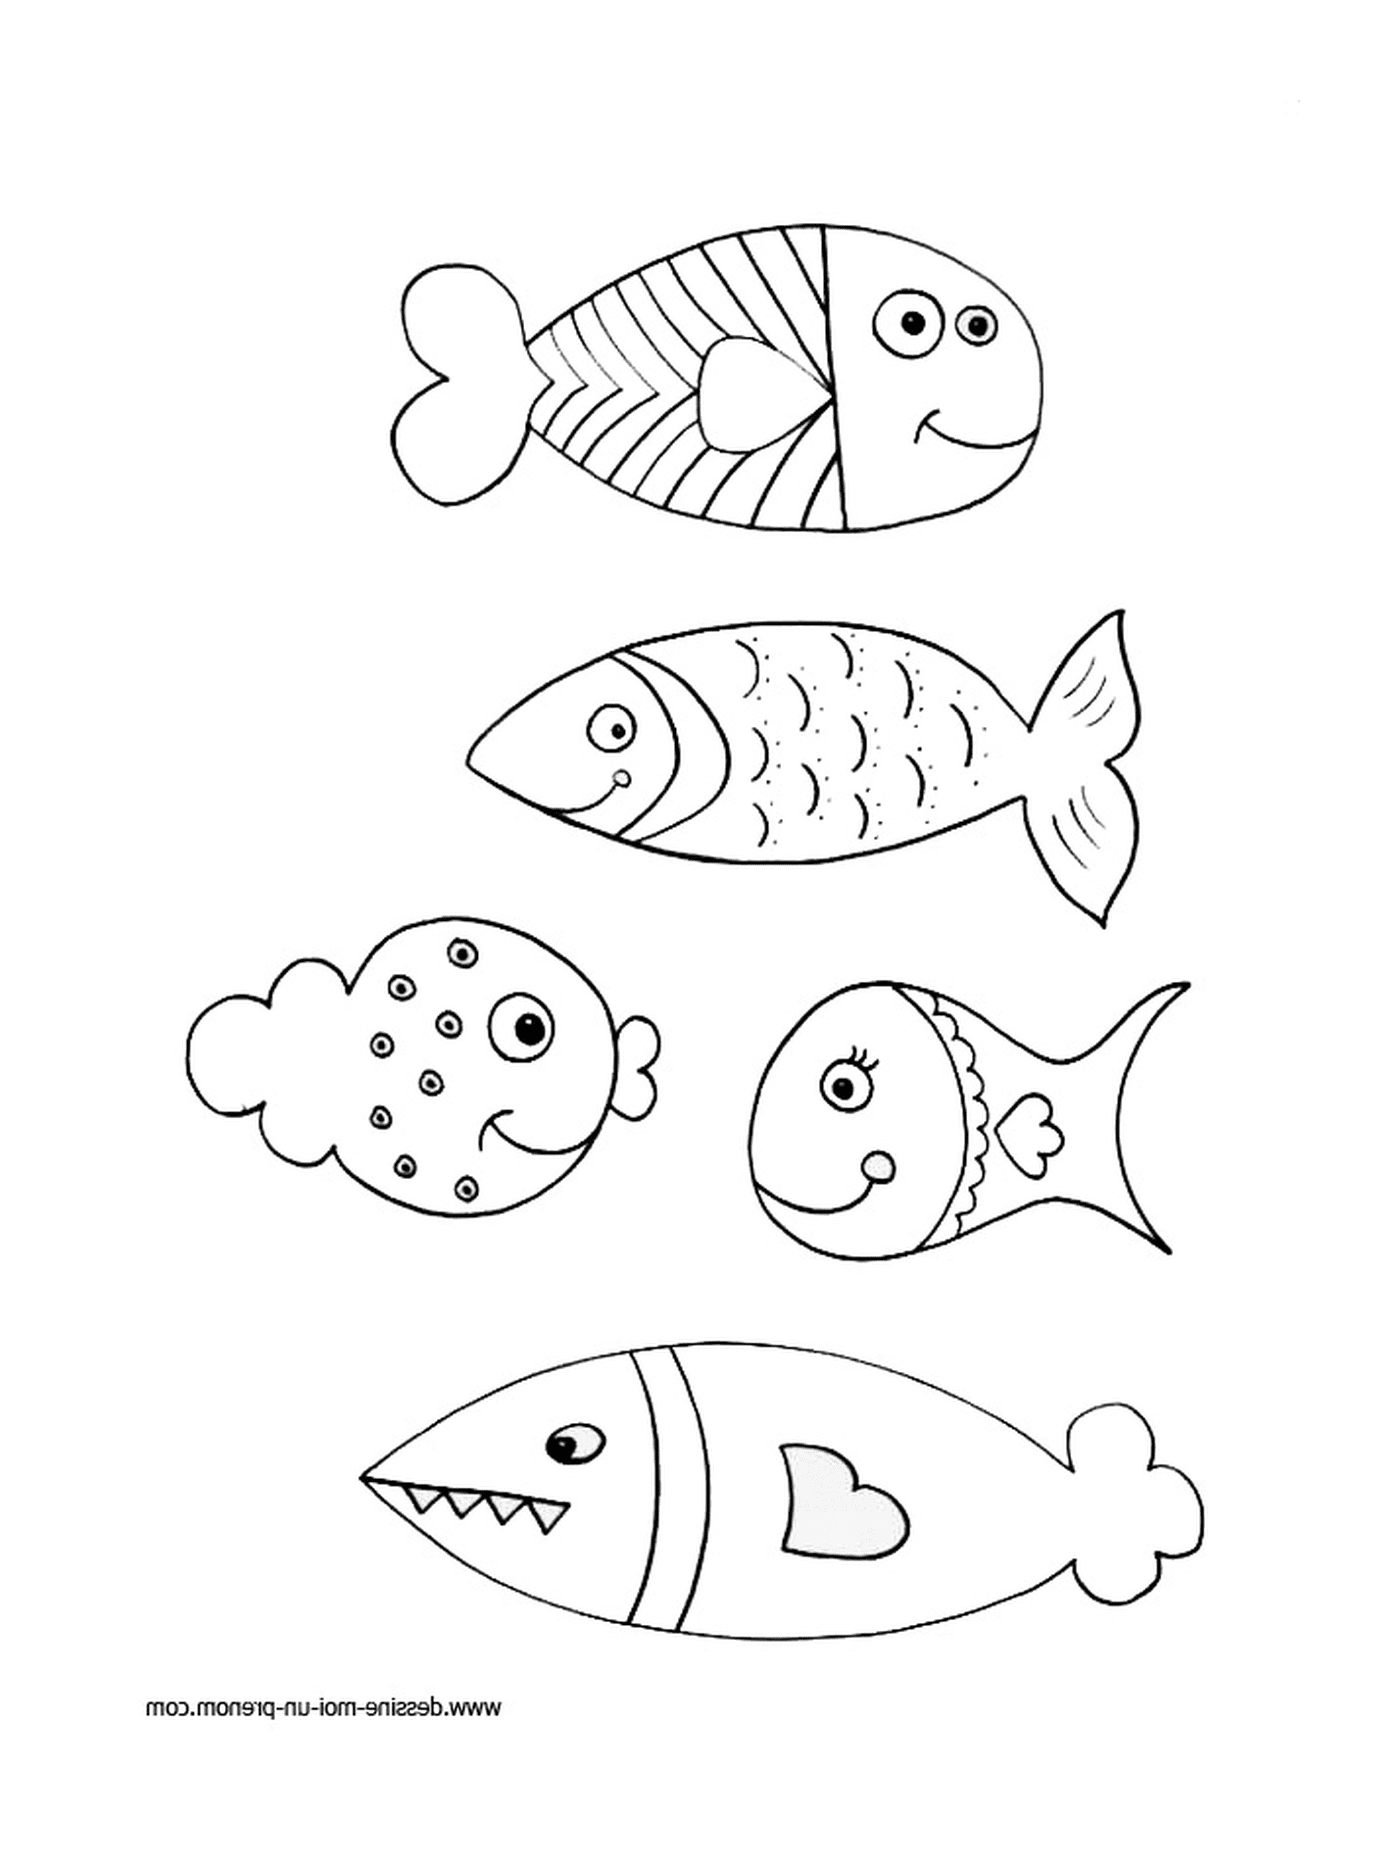  Ausgerichtete Fischgruppe 